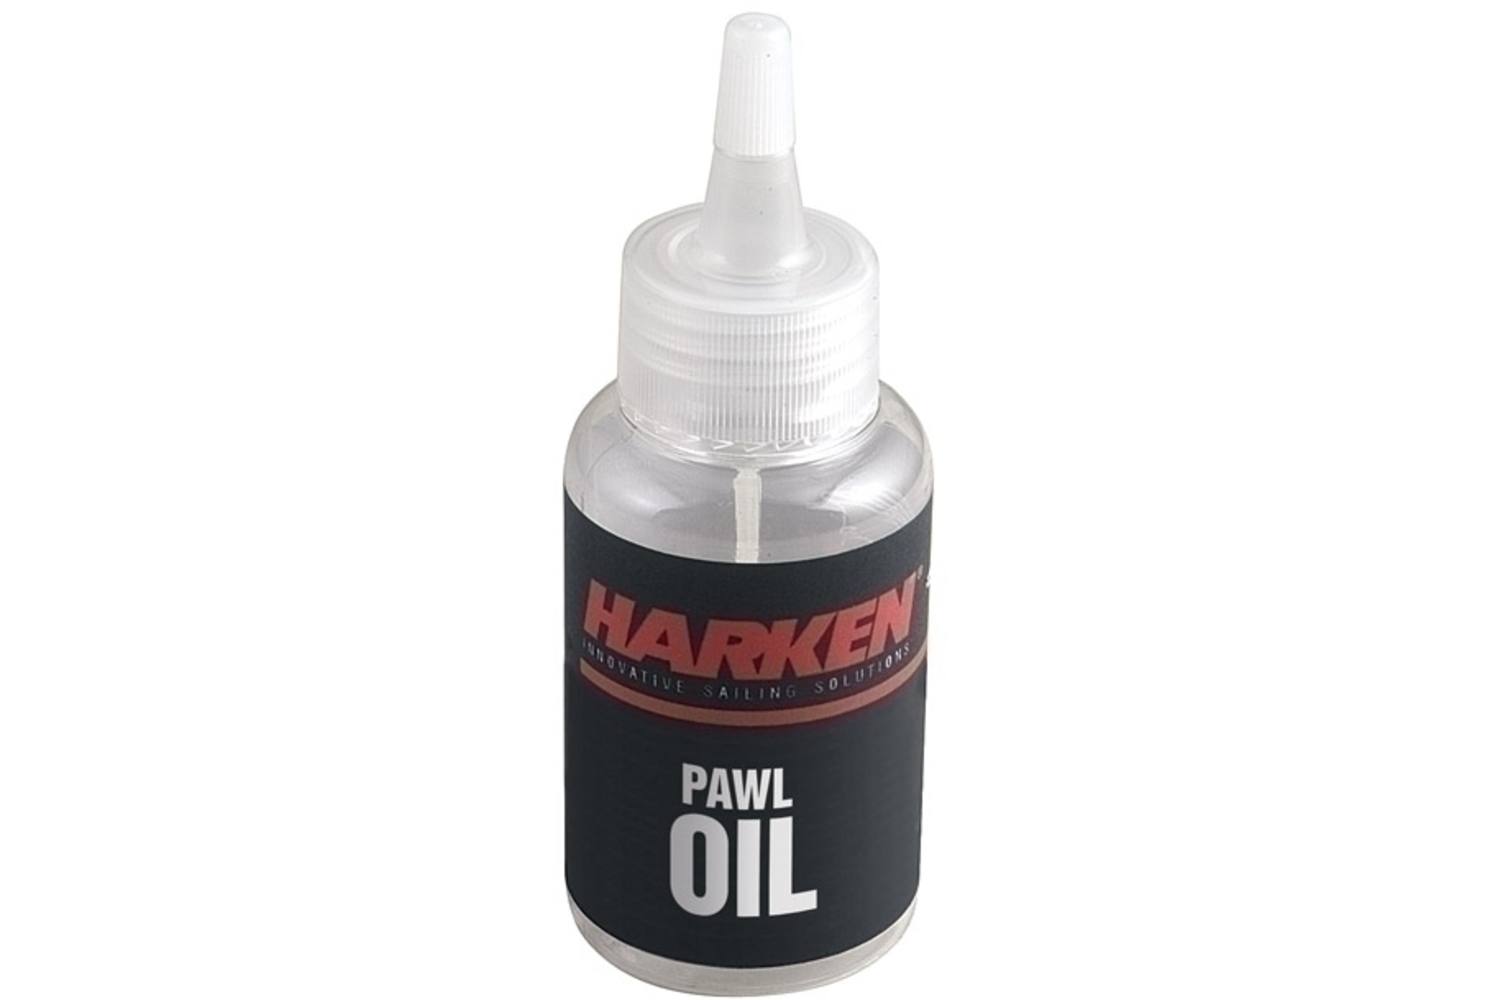 Harken winch Pawl Oil